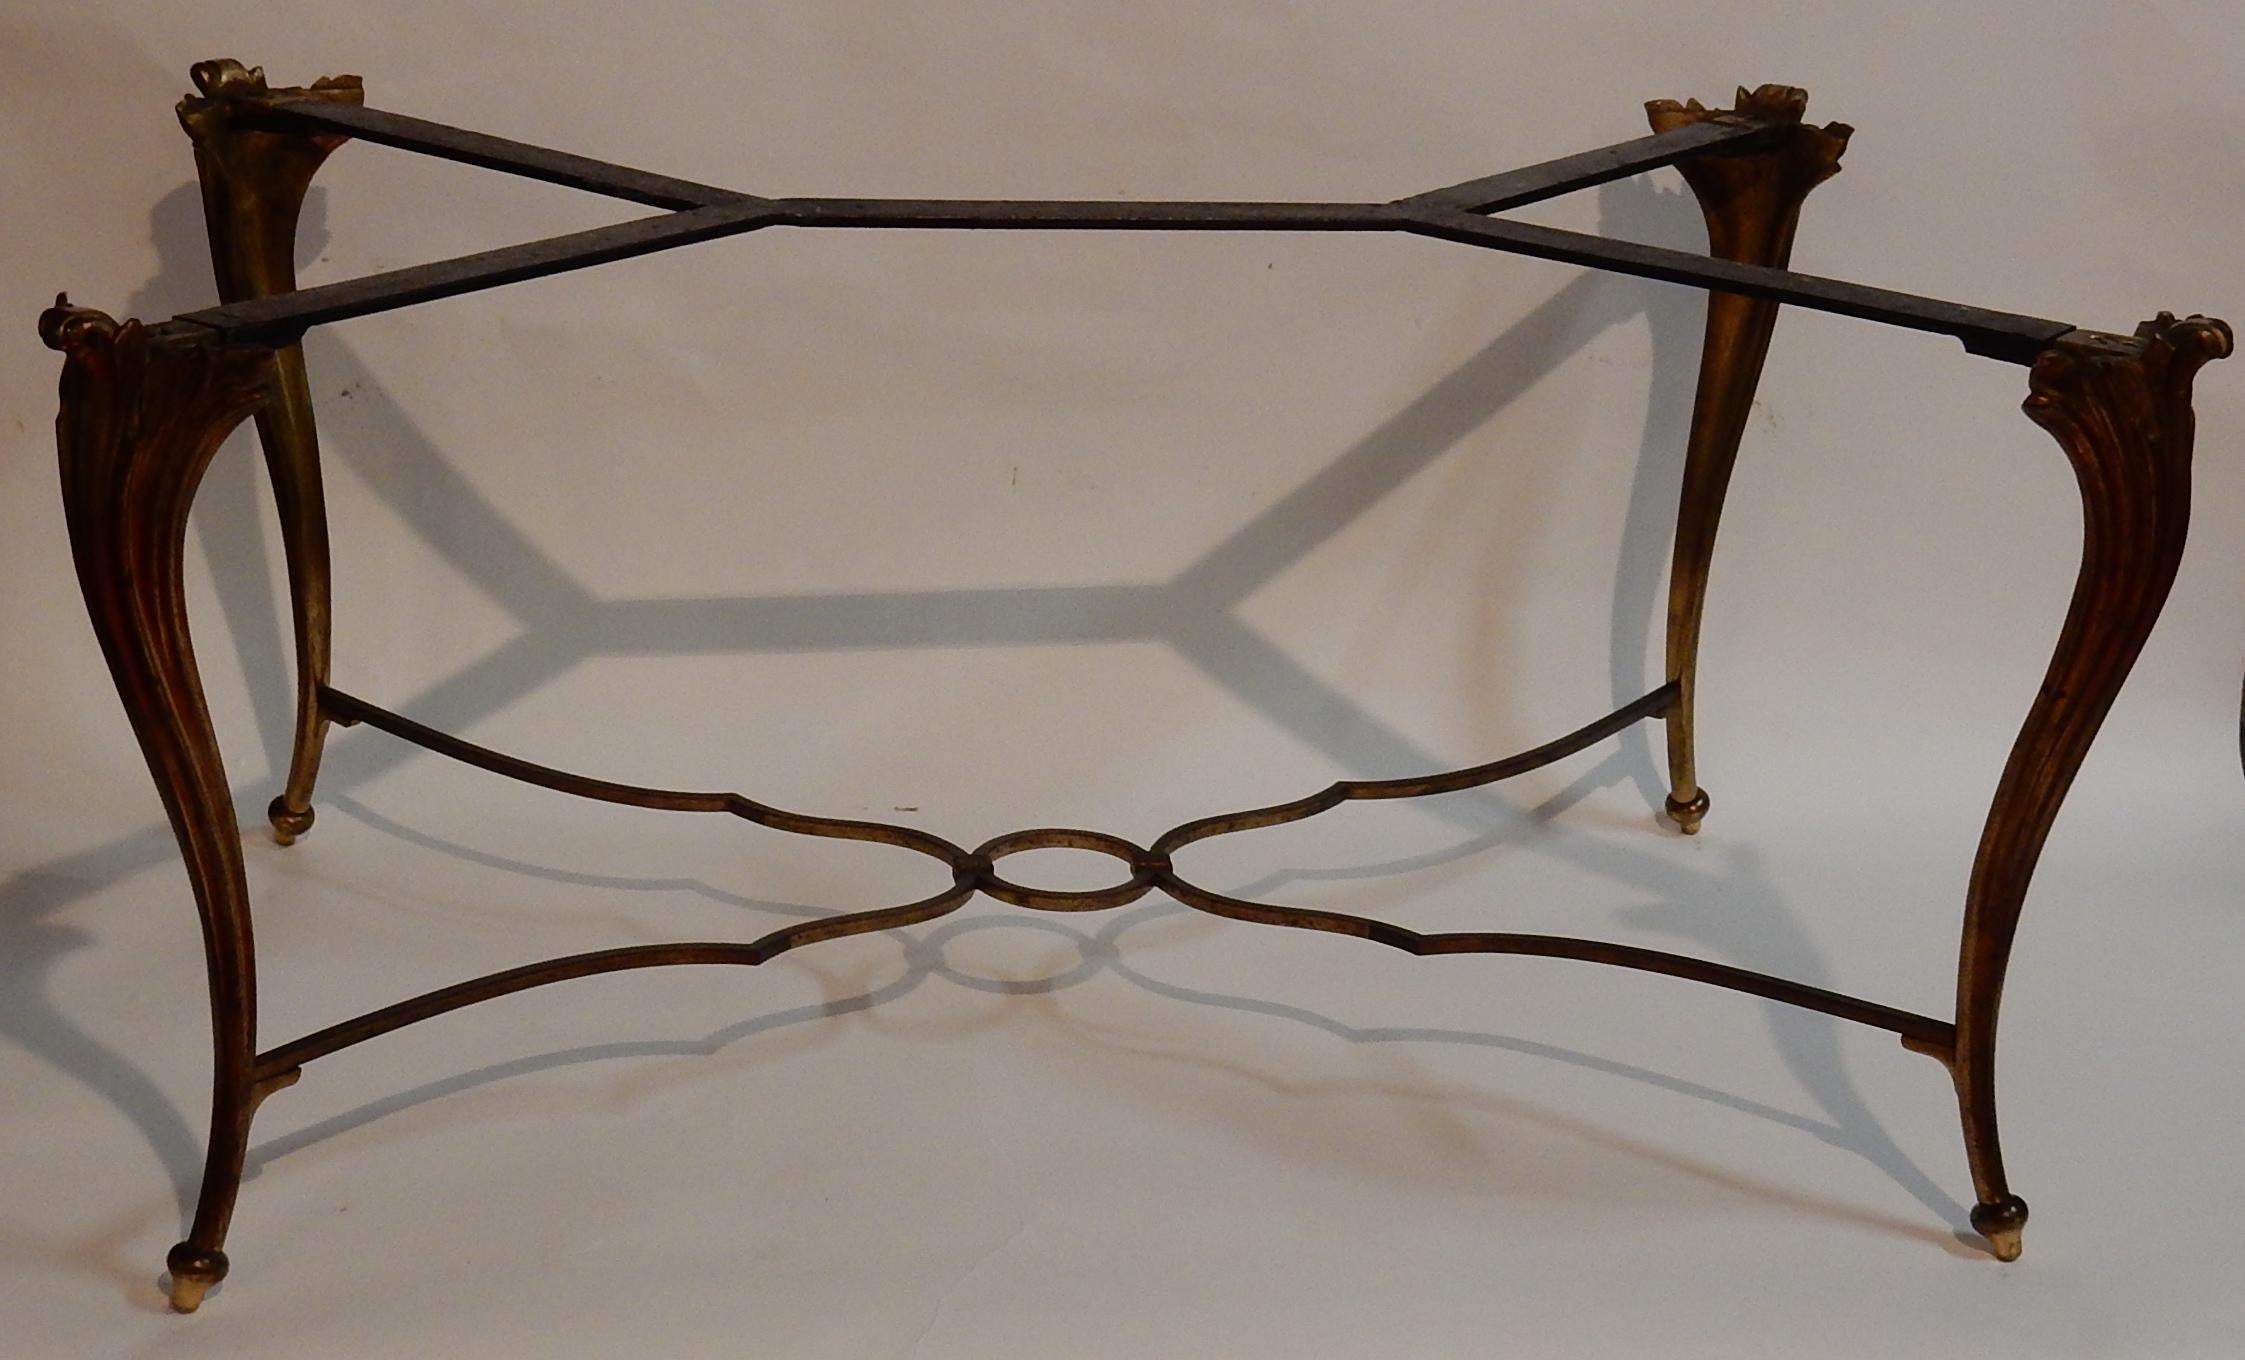 Table basse en décor bronze, plateau laqué de Chine s'adapte à Napoléon 3, la partie basse est solidarisée par une entretoise avec cercle en son centre.
Tout est démontable.
Plus facile pour l'emballage d'expédition,
circa 1940-1950, bon état.